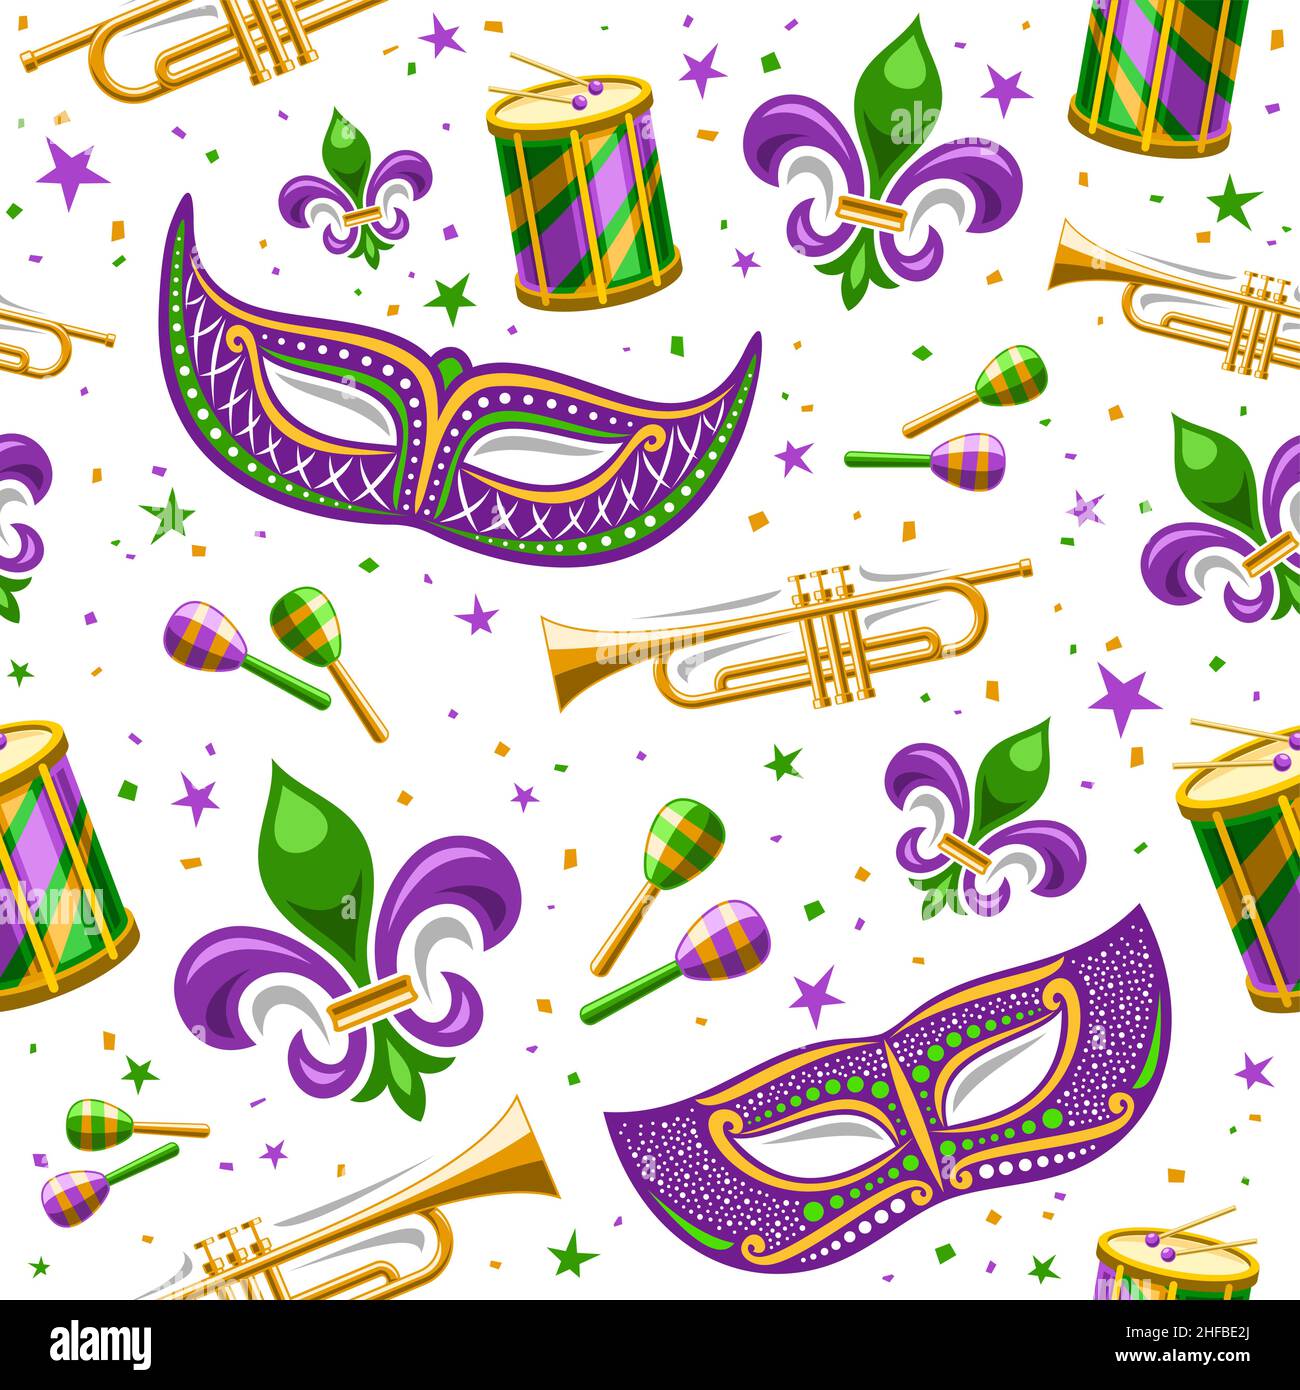 Vector Mardi gras sans couture motif, fond carré répétitif avec étoiles décoratives, masque vénitien violet, instruments de musique de rue, bacille coupé Illustration de Vecteur